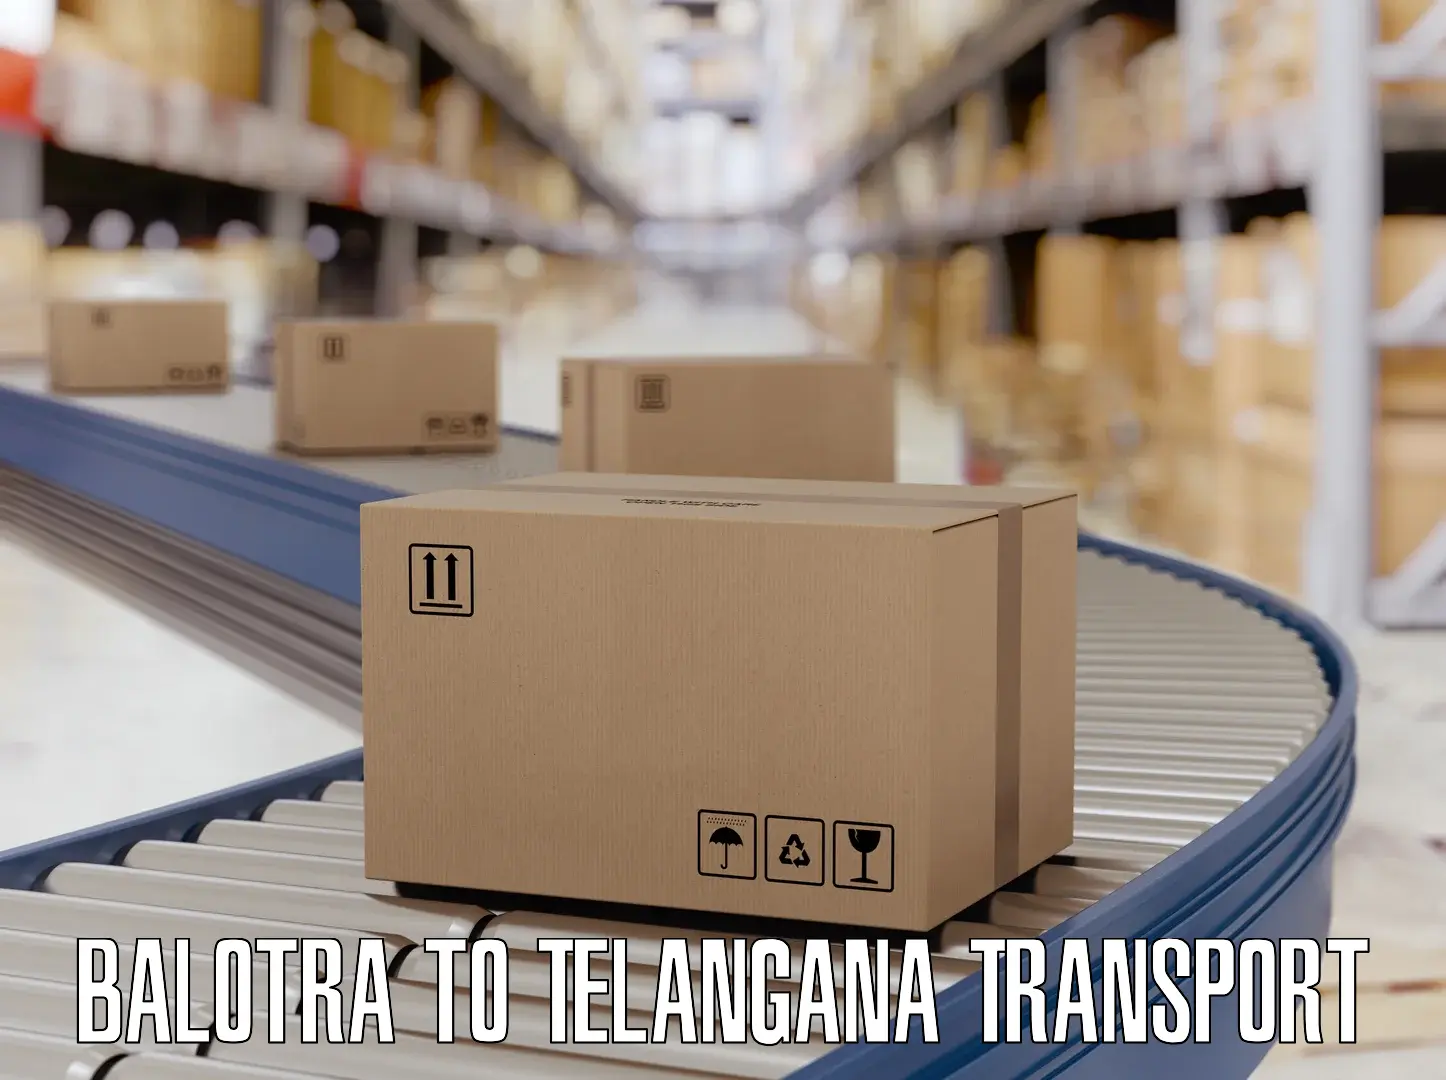 Shipping partner Balotra to Telangana